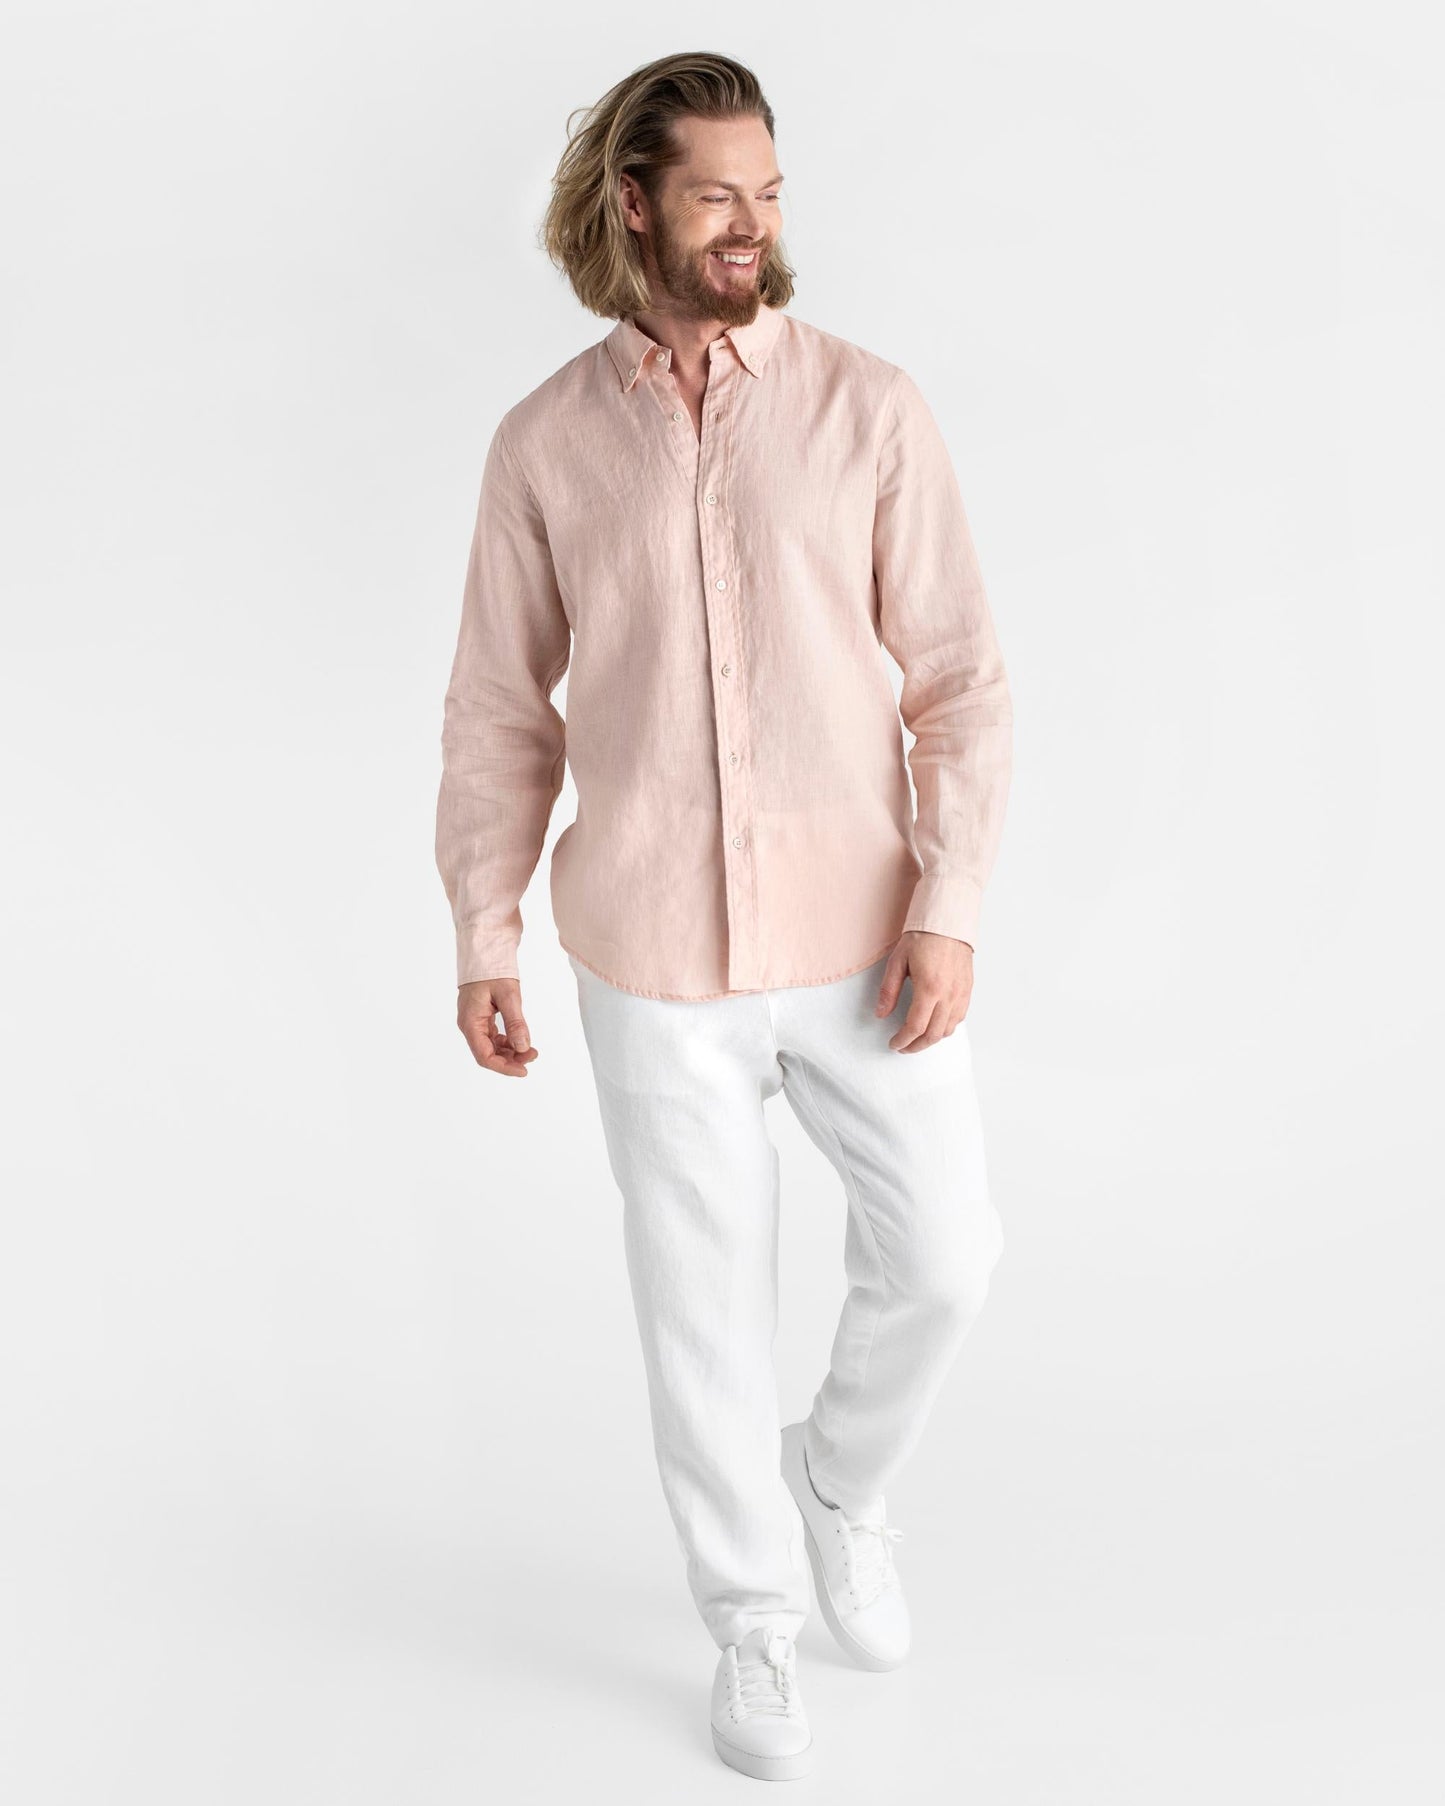 Men's classic linen shirt WENGEN in Light pink - MagicLinen modelBoxOn